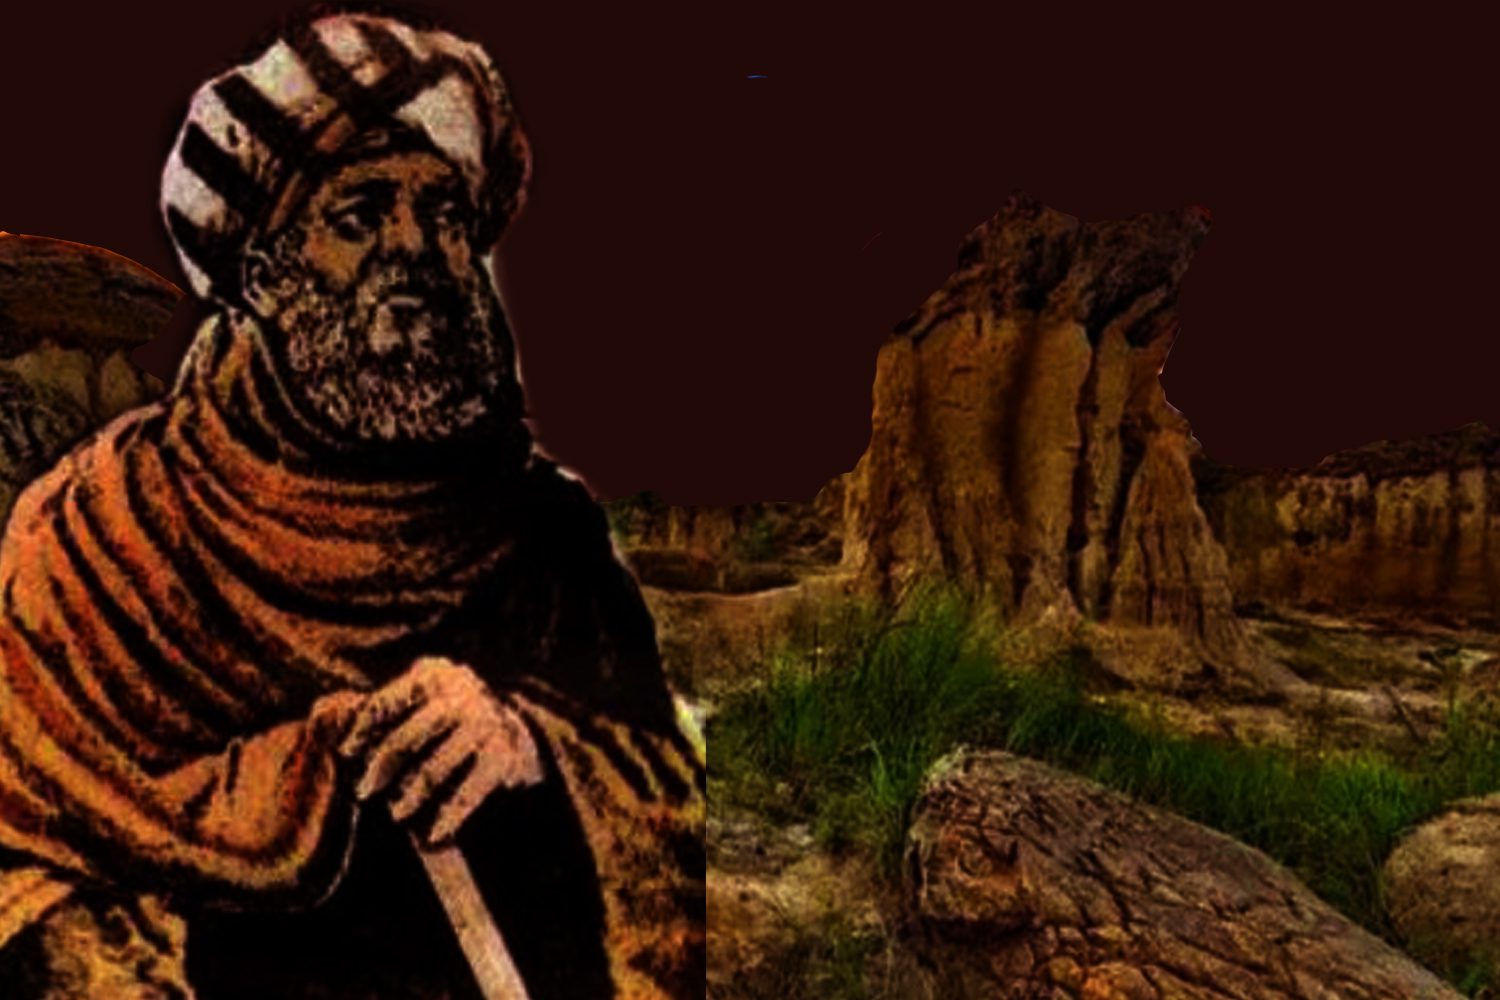 Biografi Tsabit Bin Qurrah 836-901 M, Astronom dan Matematikawan dari Harran